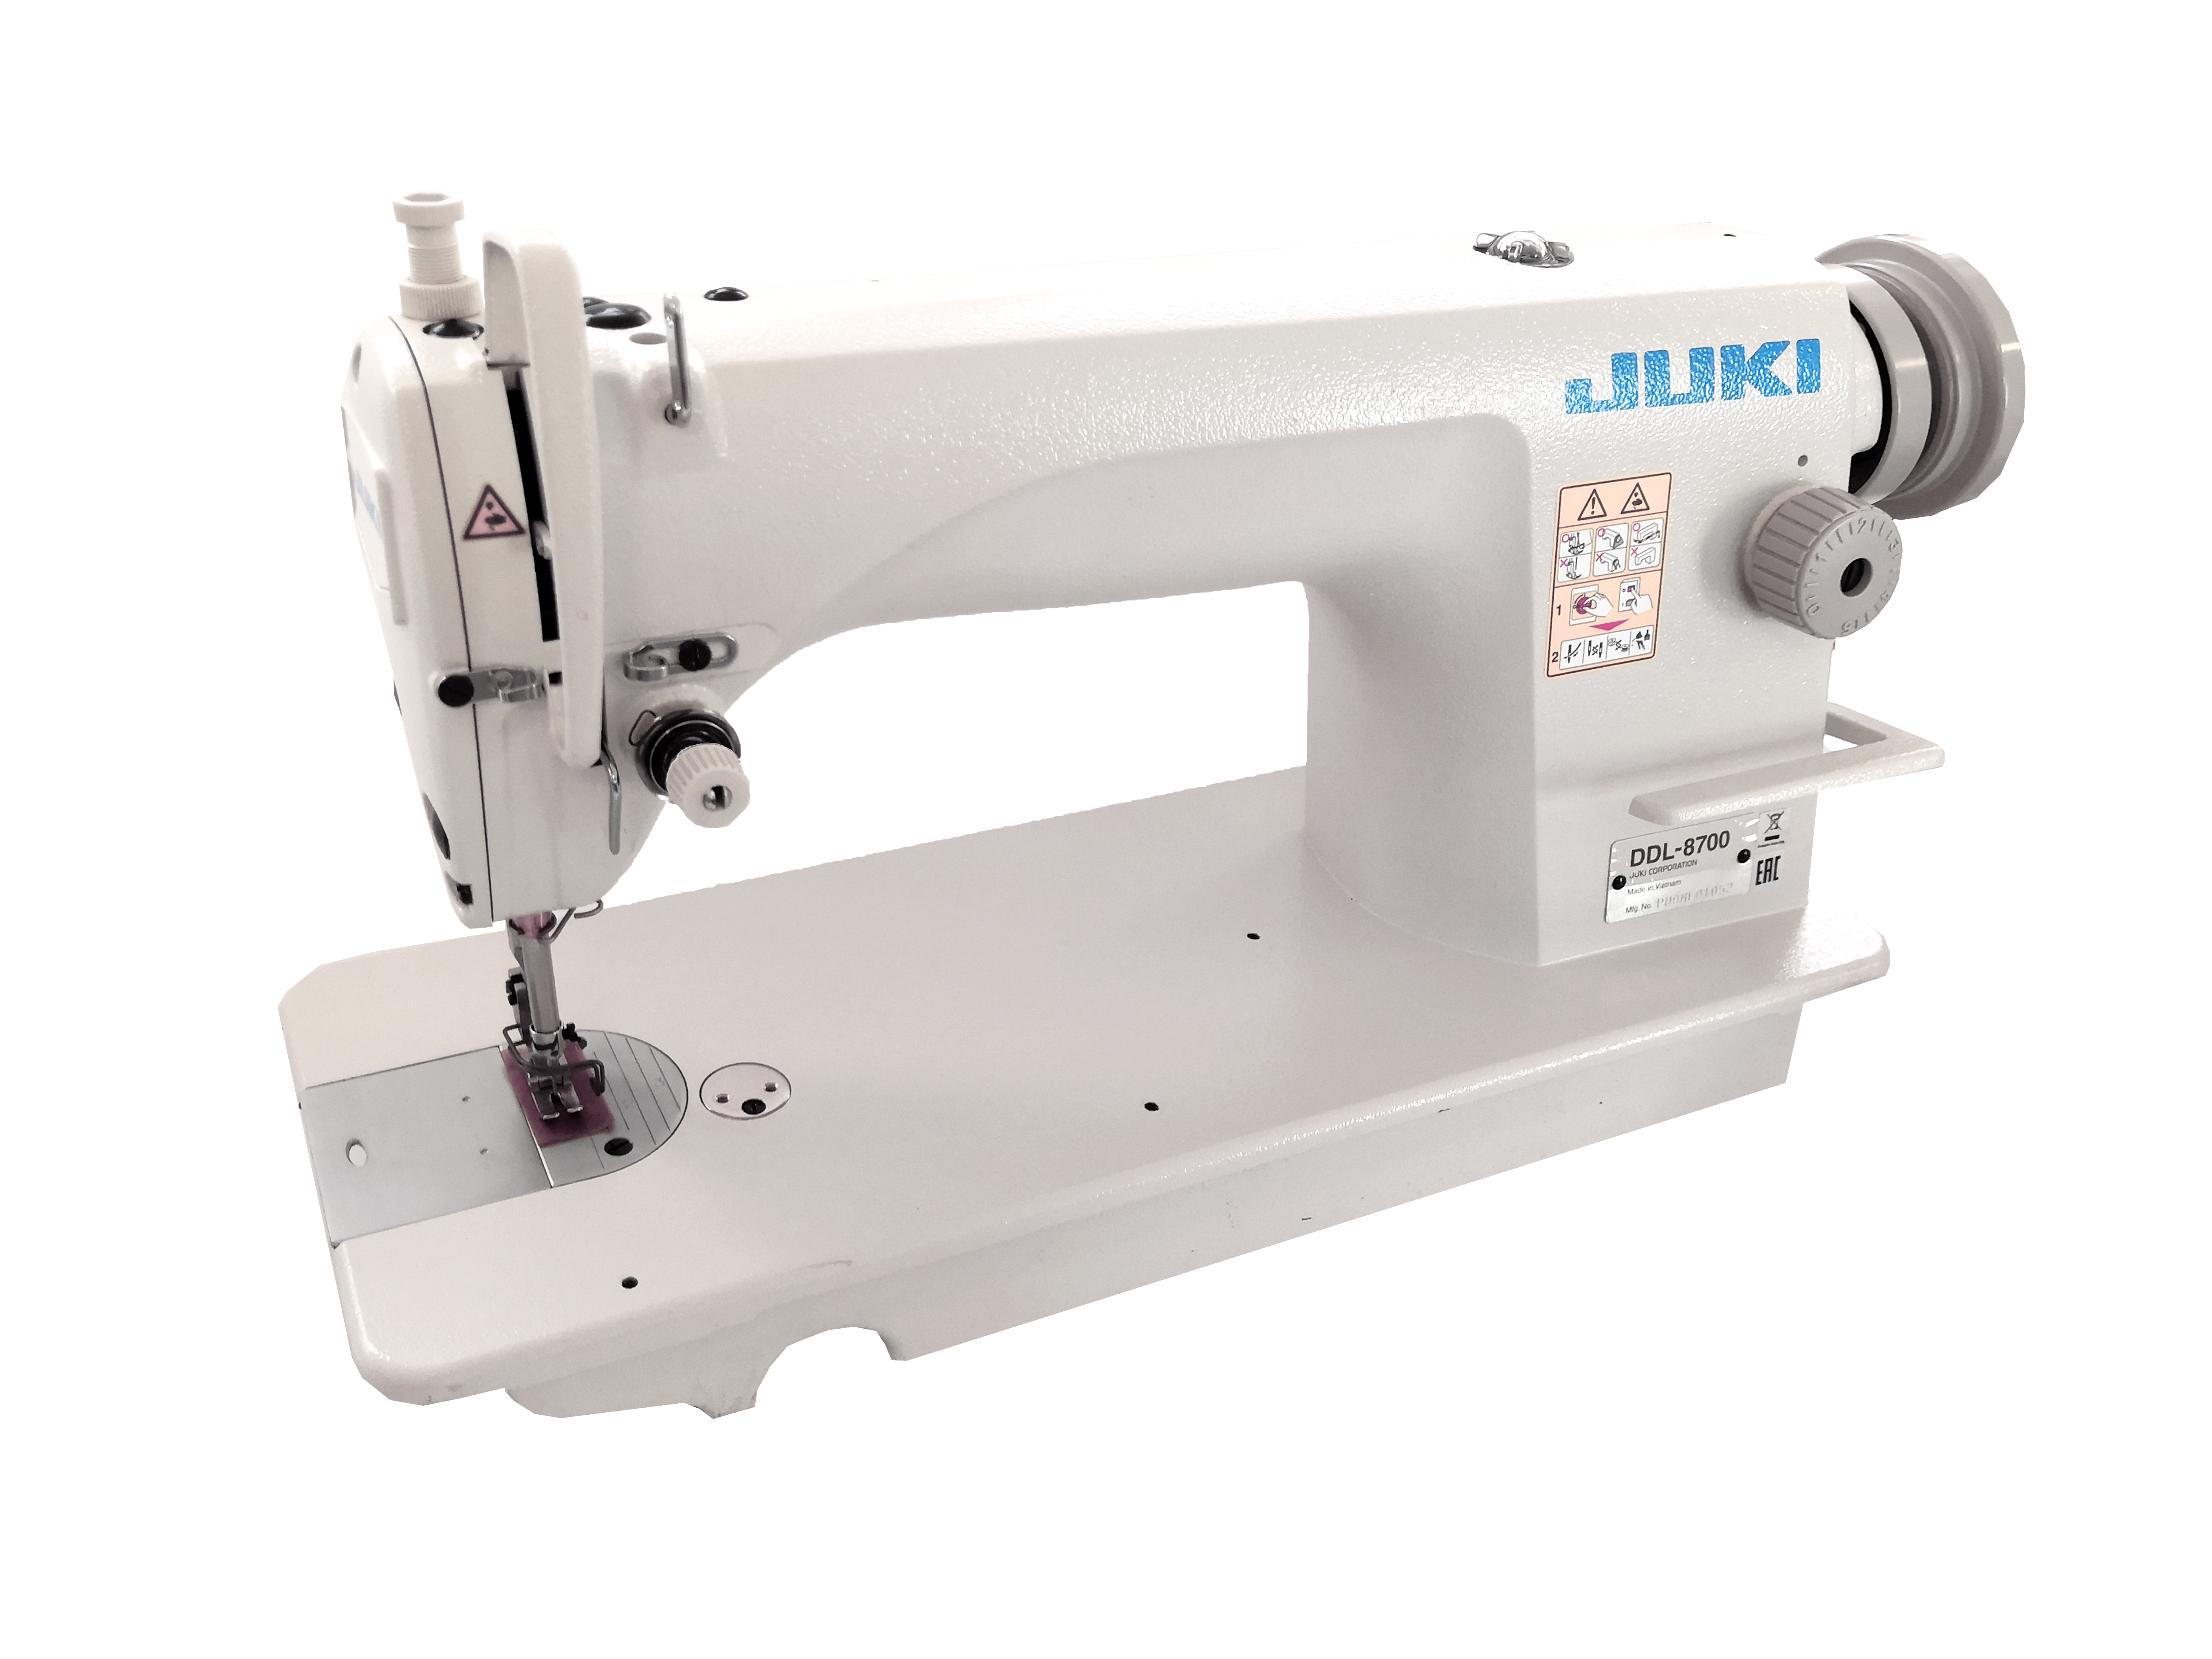 Купить машинку джуки. Швейная машинка Juki DDL 8700. Промышленная швейная машина Juki DDL-8700. Швейная машина Джуки 8700. Промышленная машинка Джуки DDL 8700.